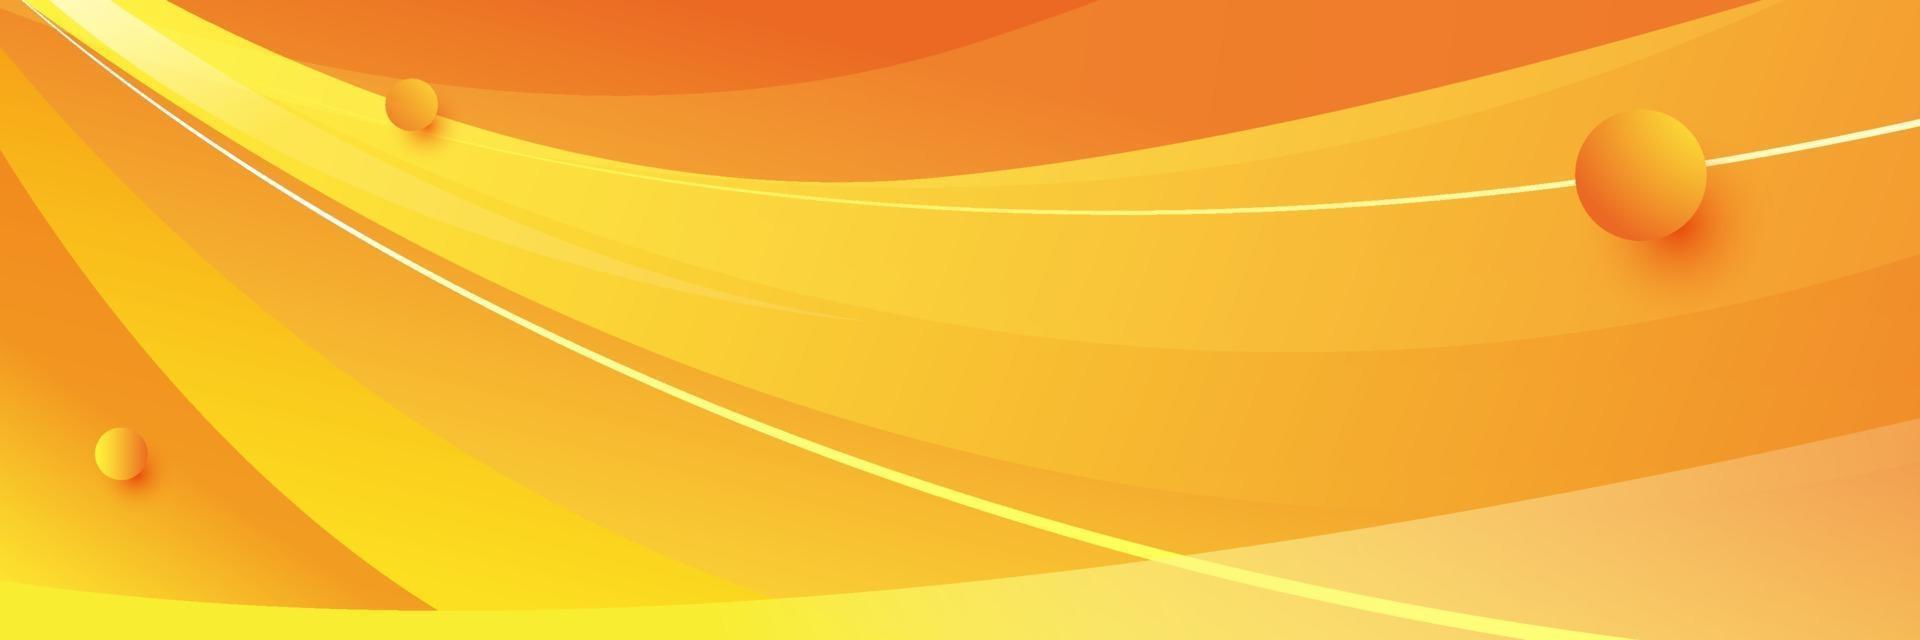 abstrakter orange Wellenhintergrund vektor